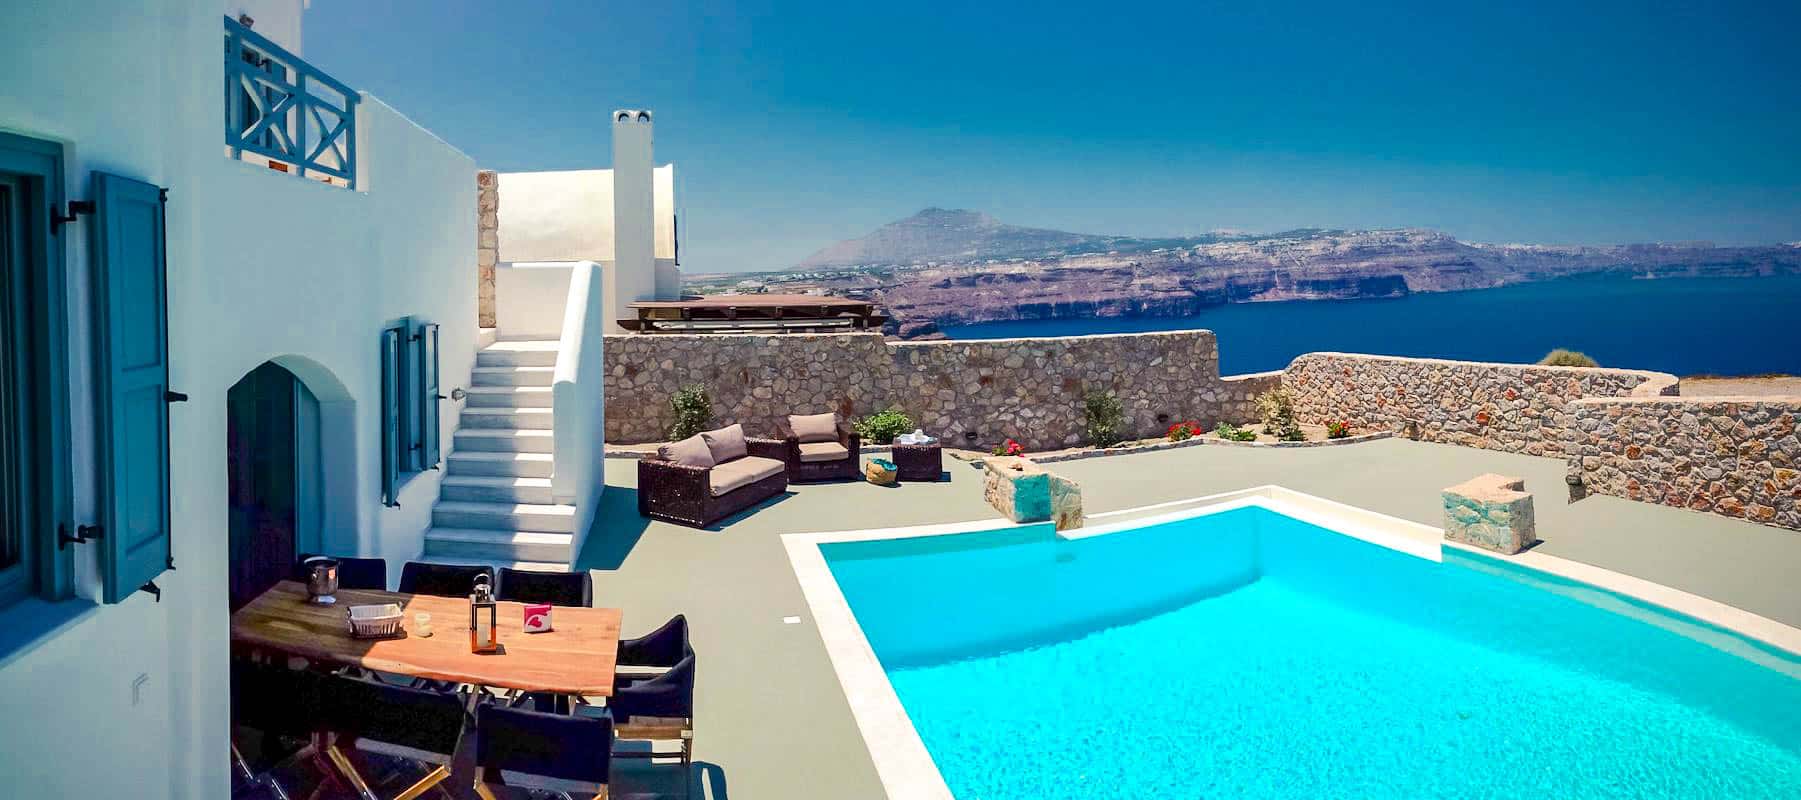 Villa for Sale in Santorini Caldera Akrotiri (Part of a Complex of 5 Villas)